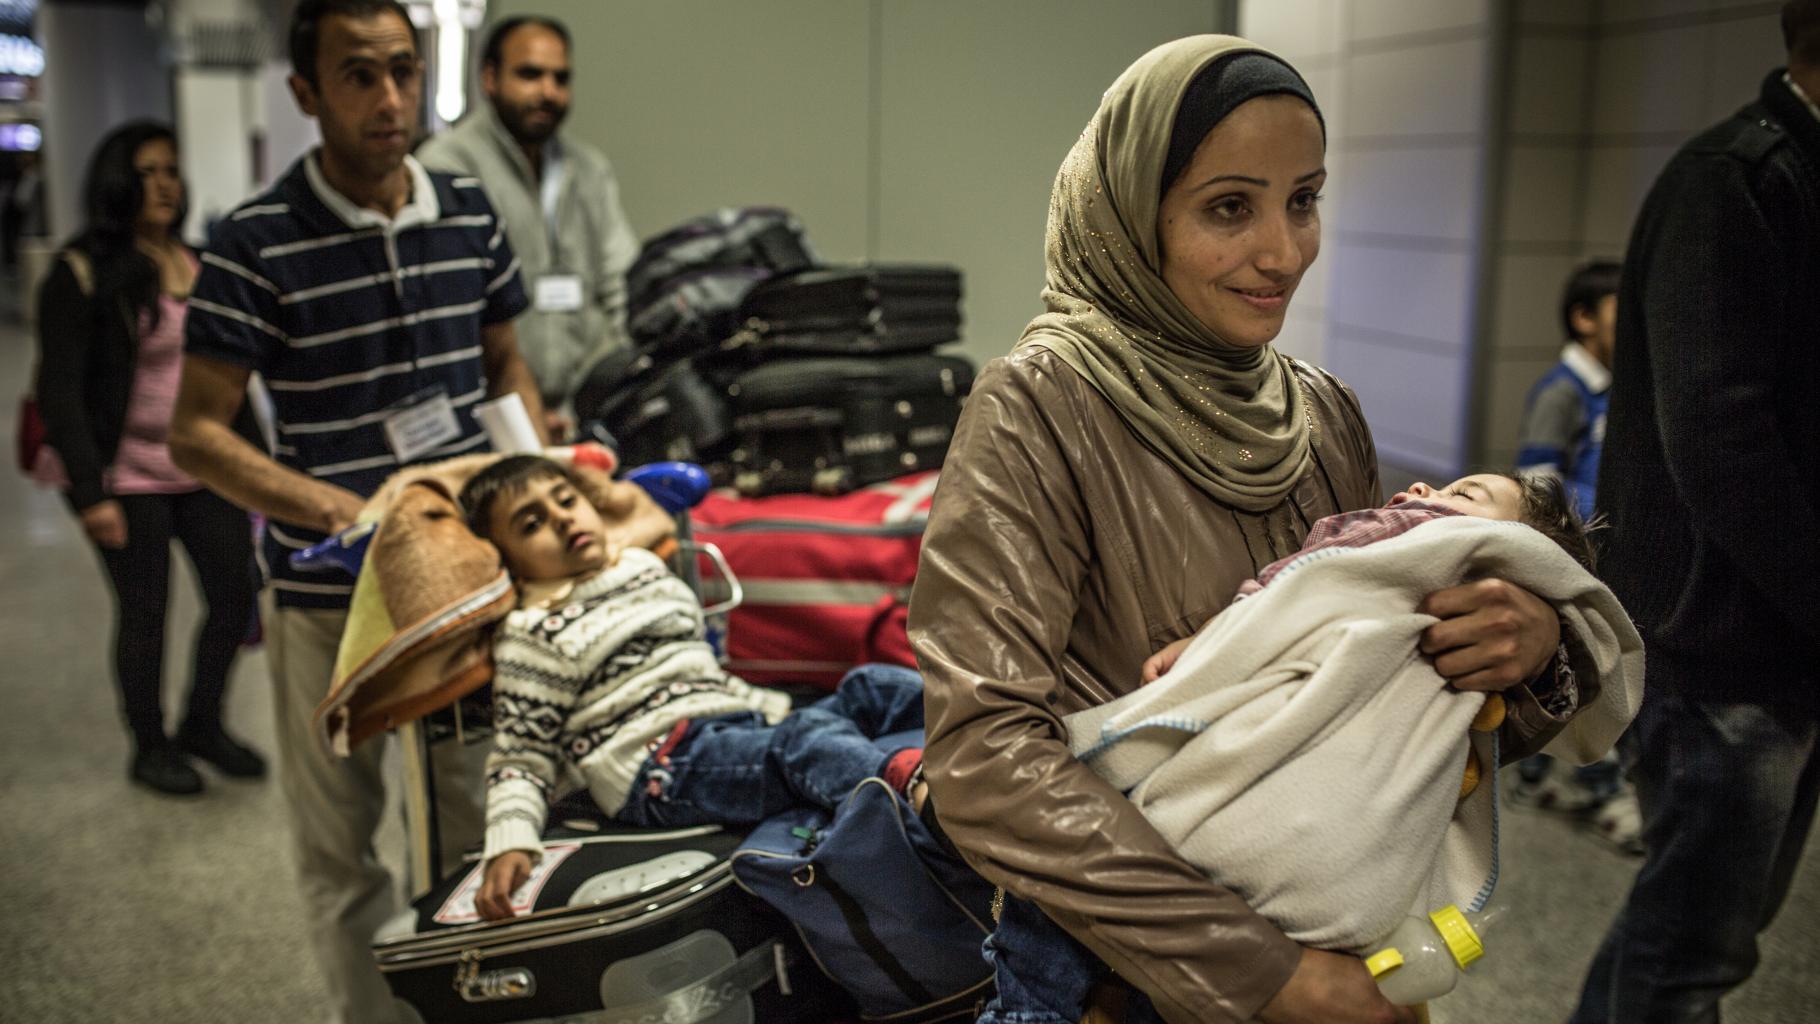 Eine Frau mit einem kleinen Kind auf dem Arm geht durch die Ankunftshalle eines Flughafens; hinter ihr schiebt ein Mann einen Kofferkuli mit Gepäck, auf dem ein müder Junge sitzt.